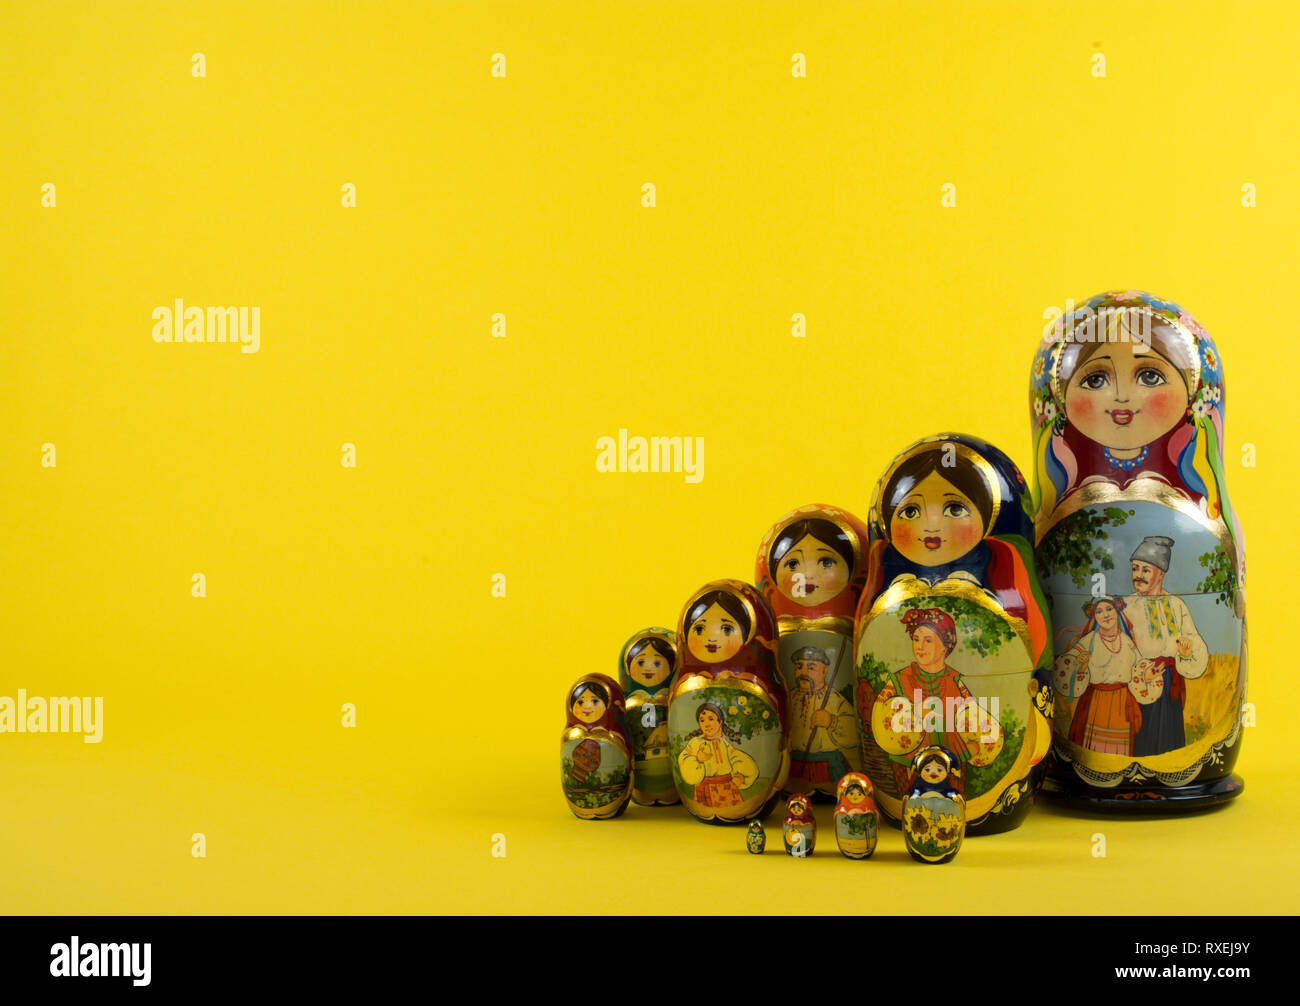 Russische Puppen Matrjoschka, 10 Stück Stock Photo